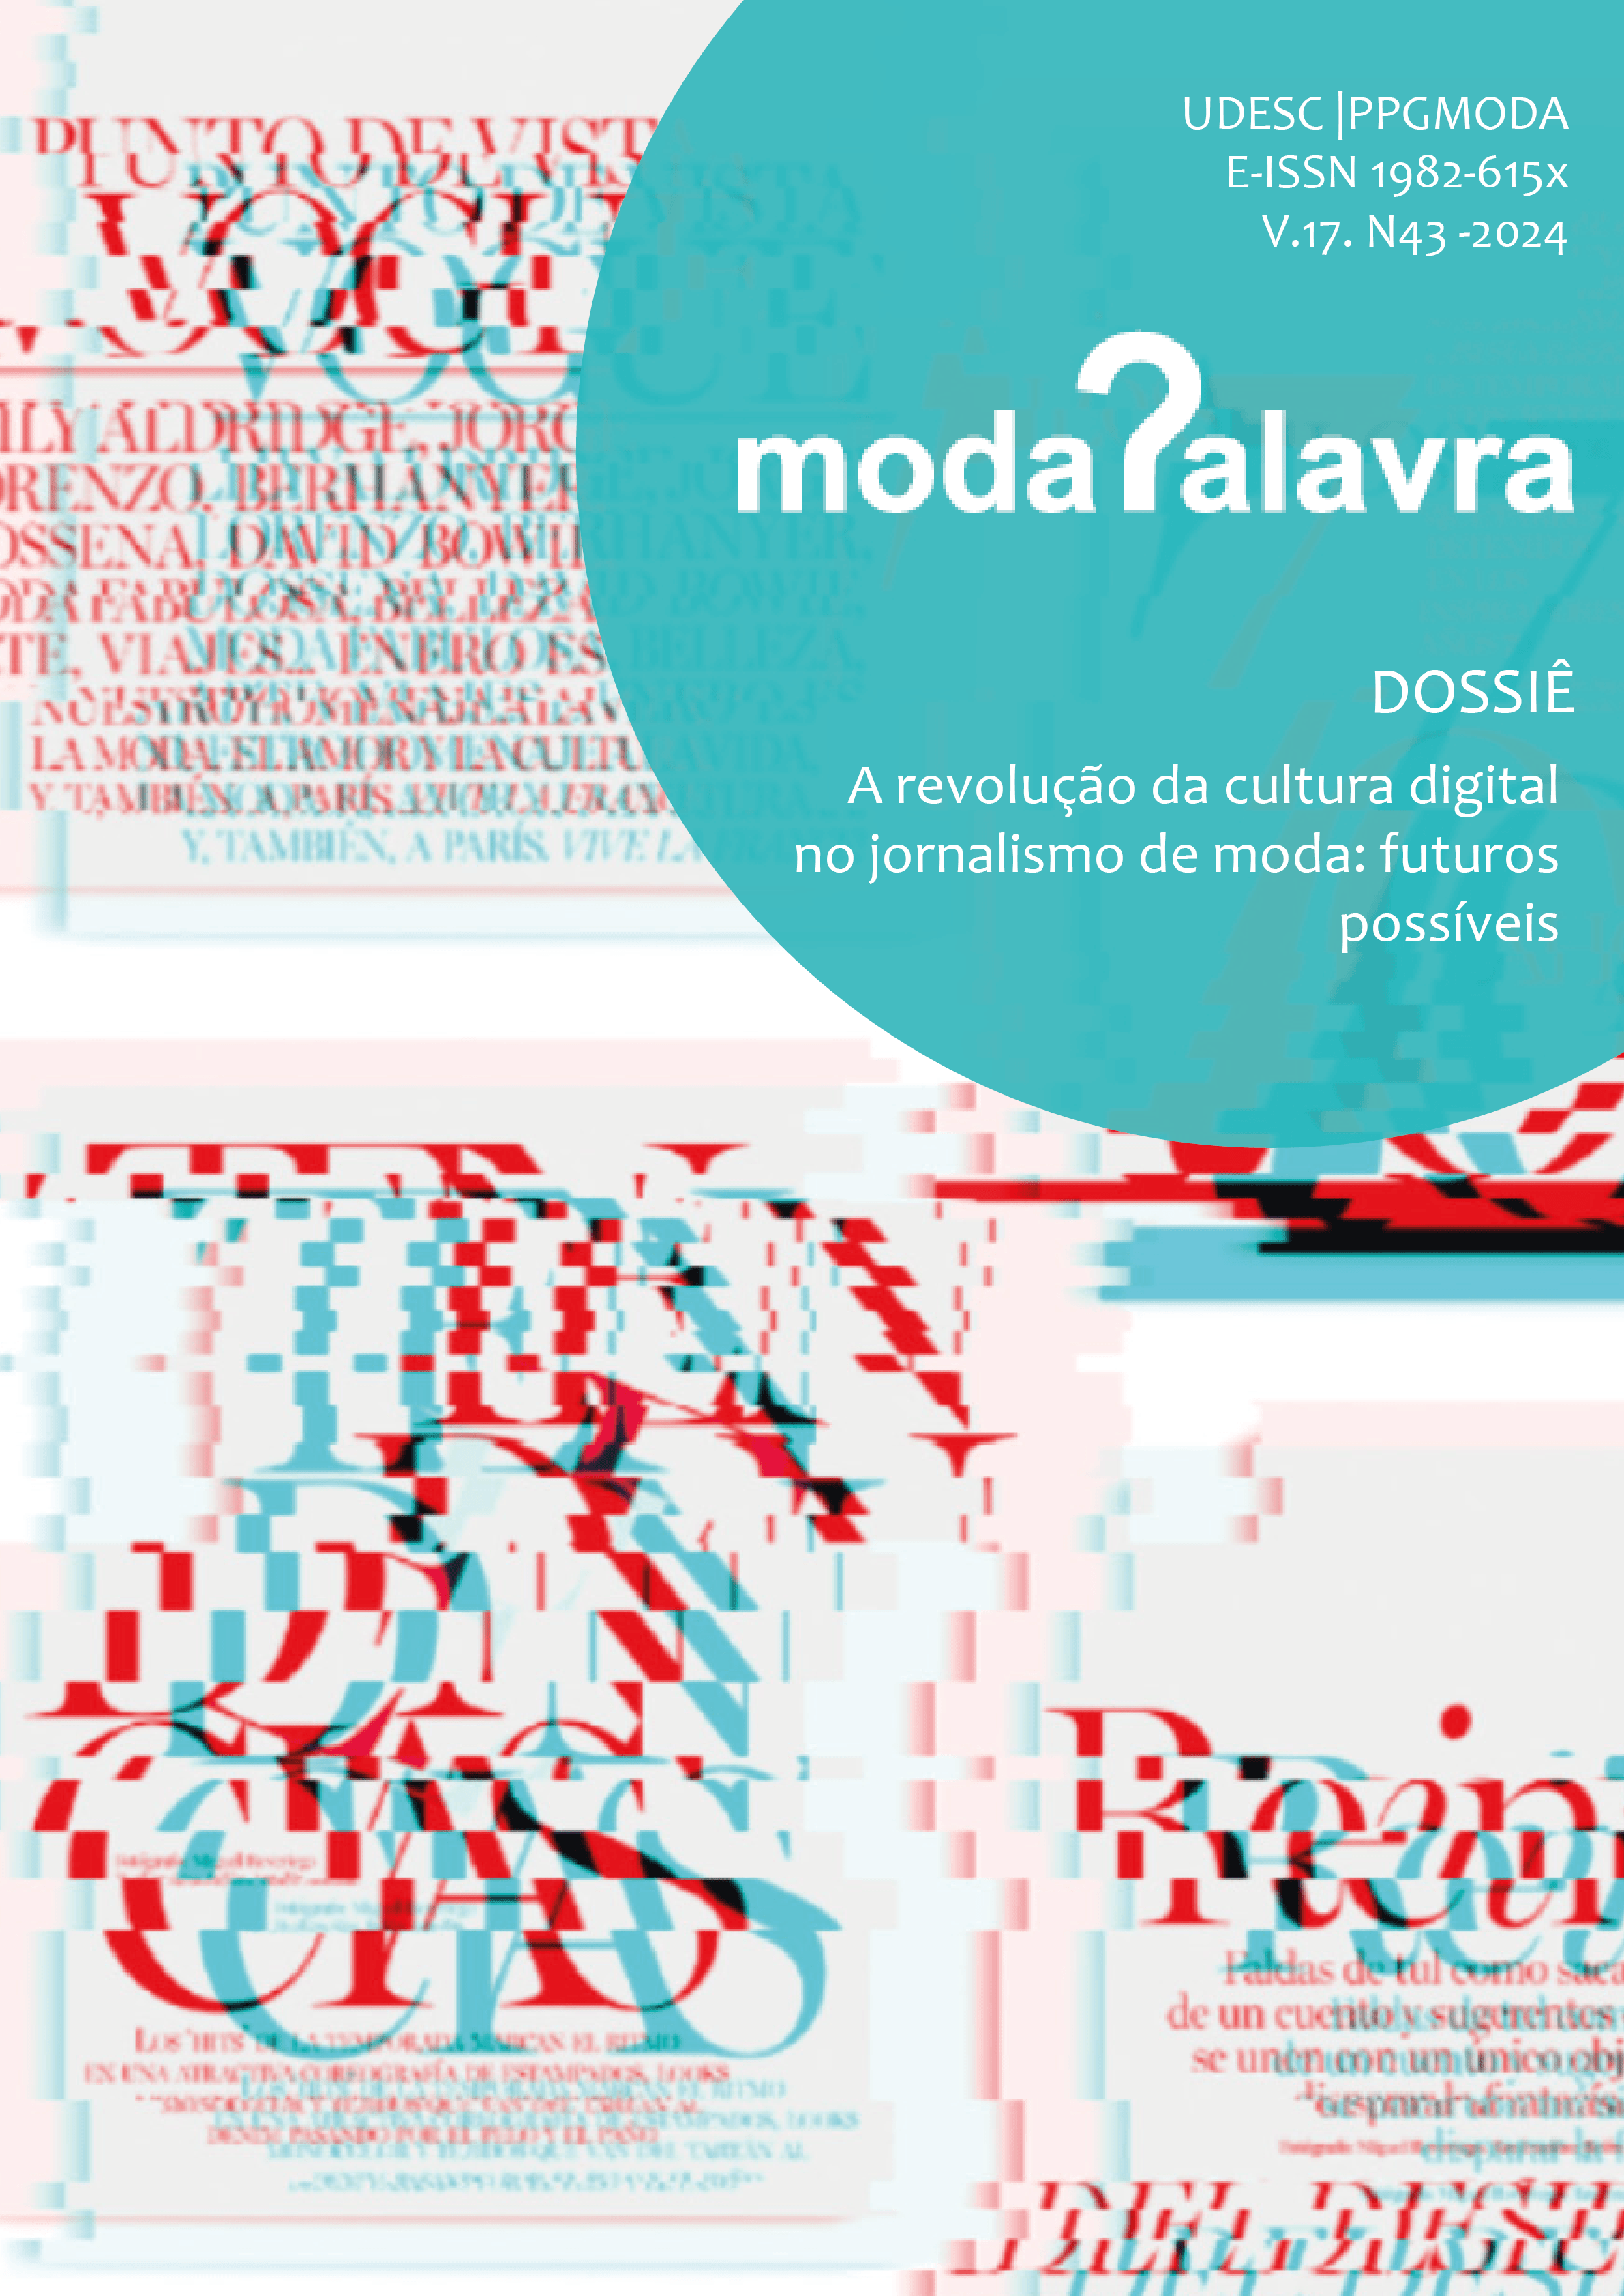 					Visualizar v. 17 n. N. 43 (2024): A revolução da cultura digital no jornalismo de moda: futuros possíveis (V. 17 N. 43)
				